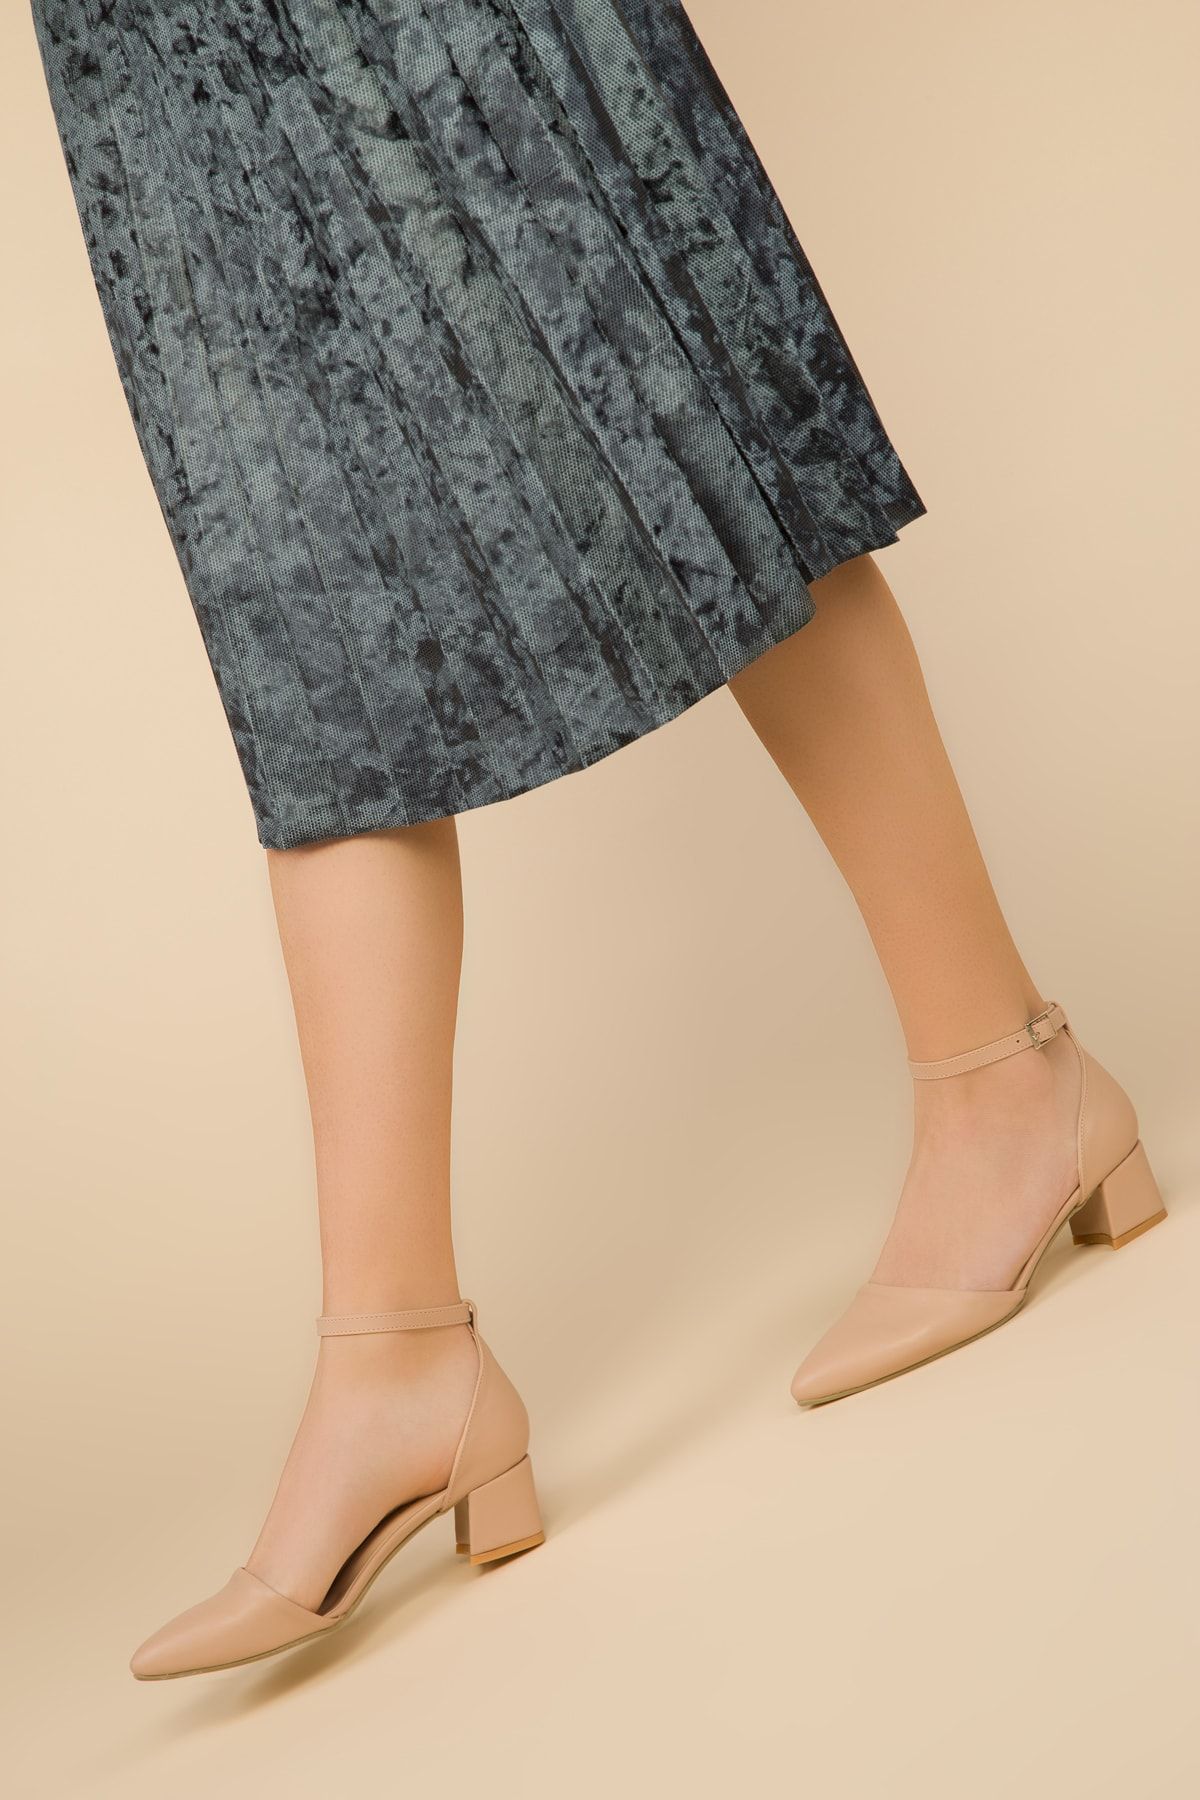 SOHO Ten Kadın Klasik Topuklu Ayakkabı 14620